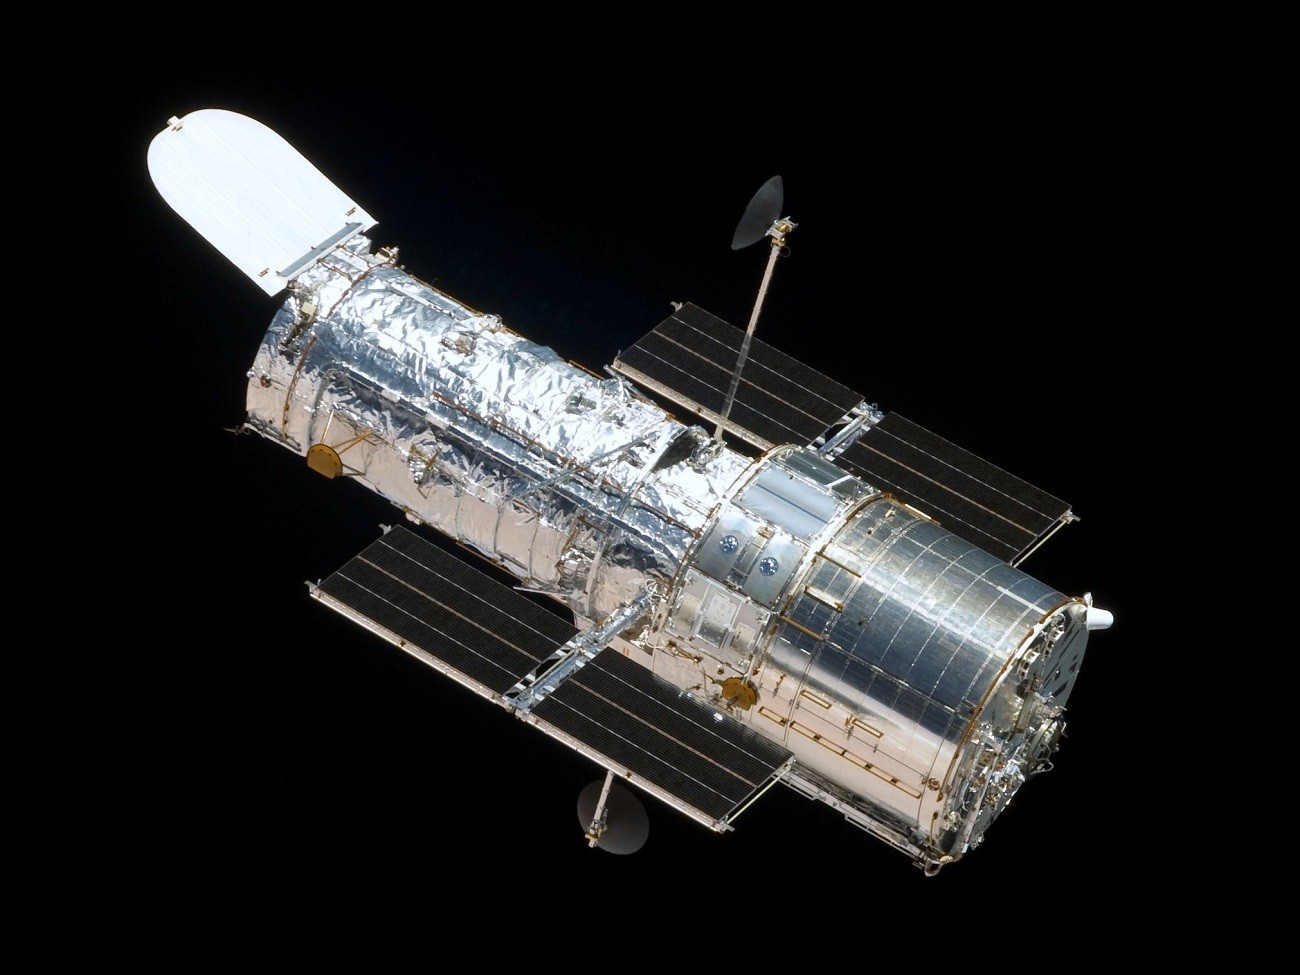 Kosmiczny Teleskop Hubble’a ma problemy, ale NASA uspokaja